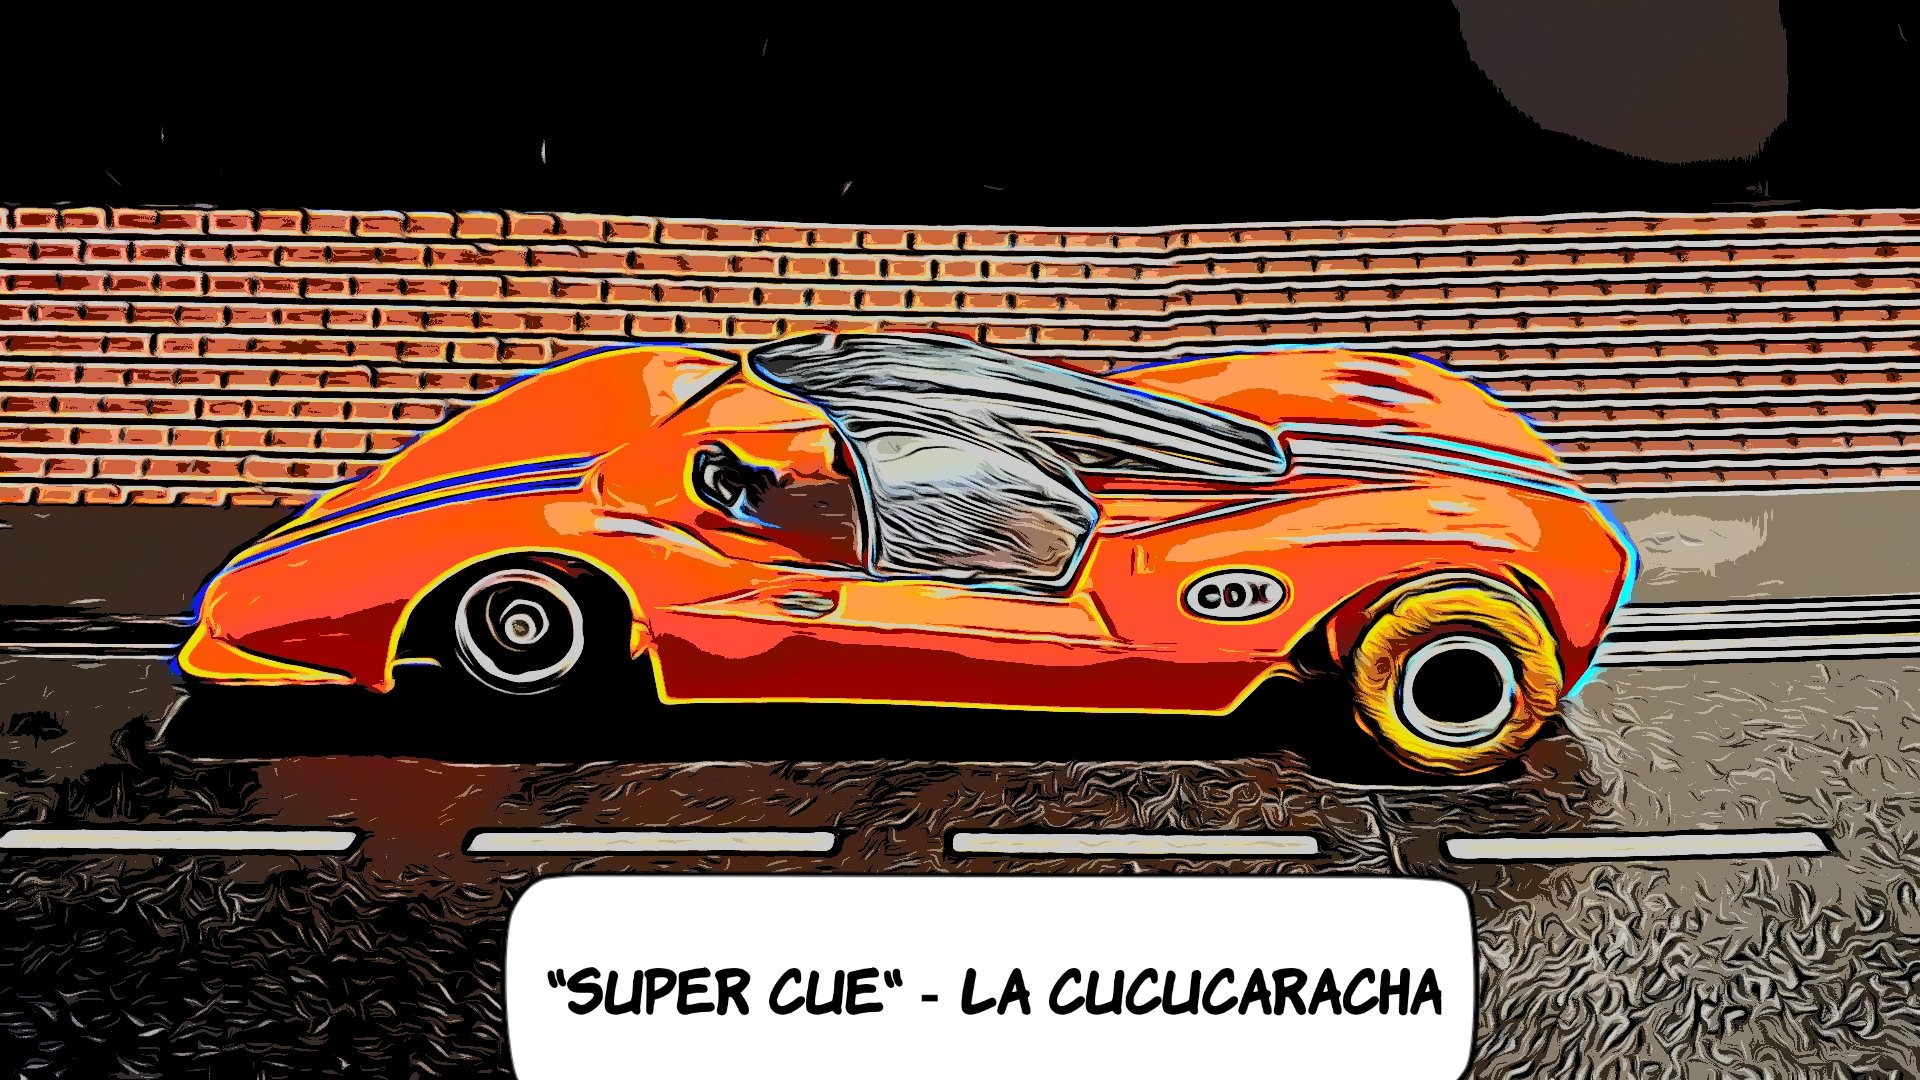 *SALE PRICE* VERY RARE COX Super La Cu Cucaracha “Super Cuc” 1:24 Scale Slot Car